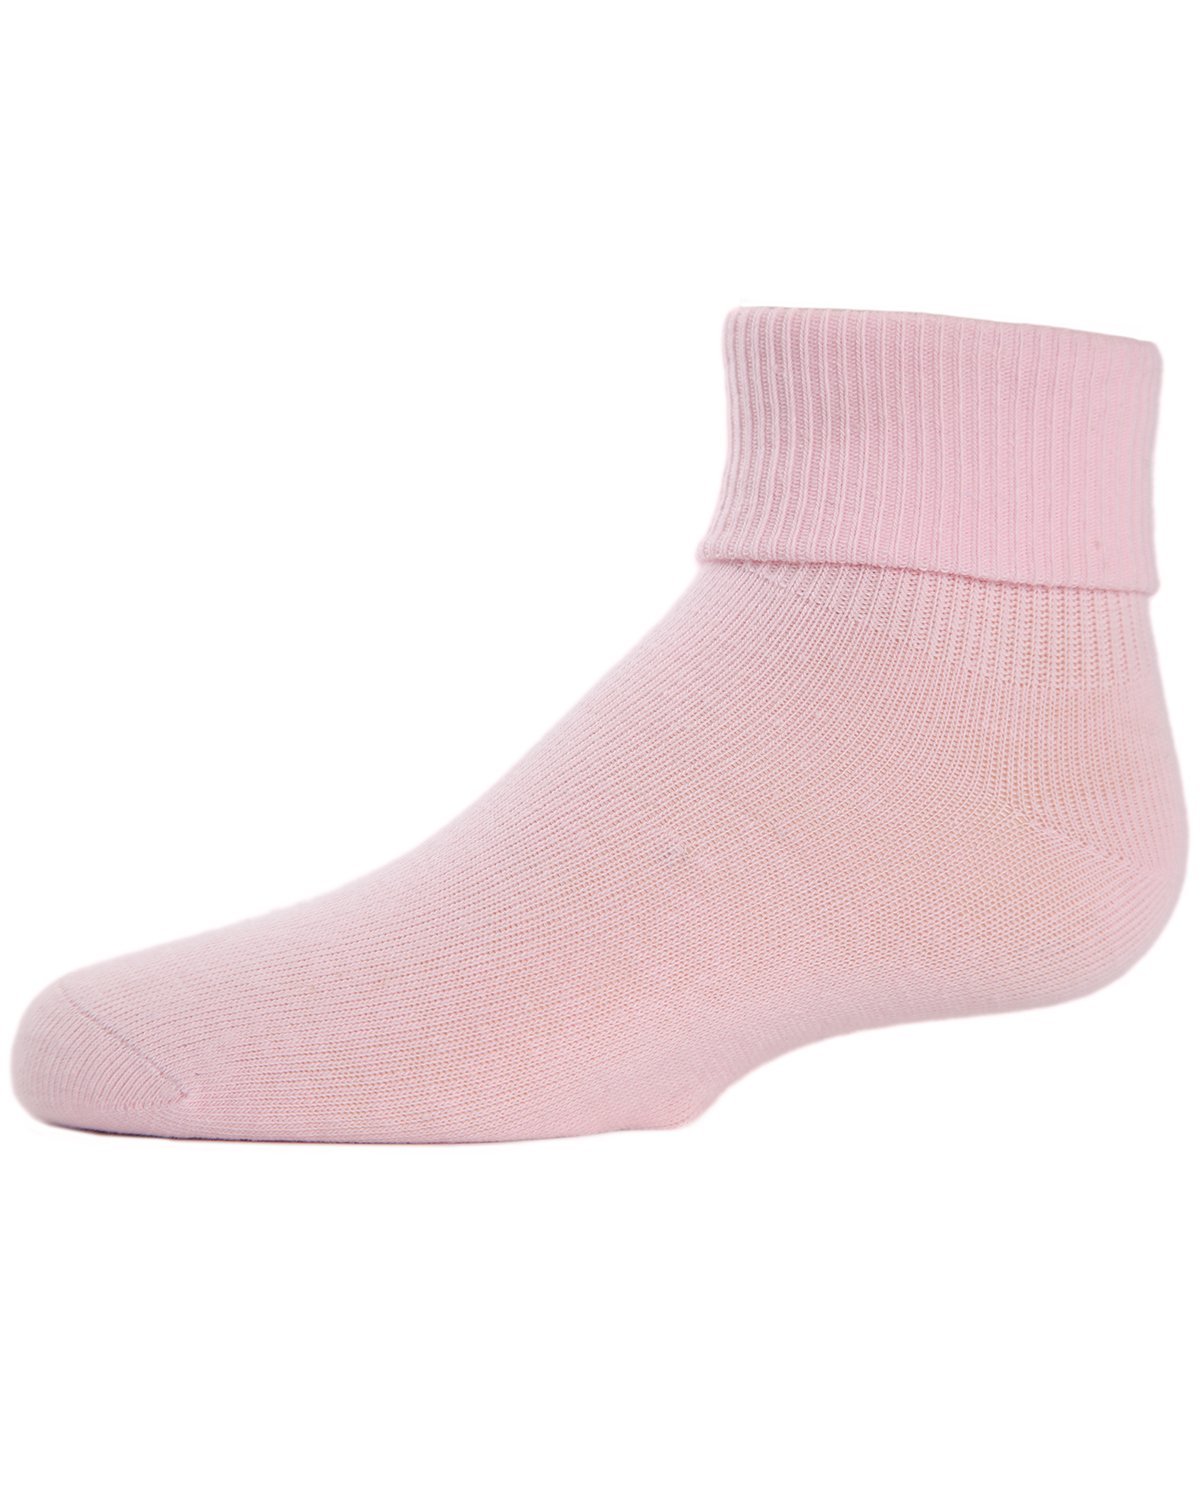 Kids Triple Roll Cotton Blend Ankle Socks